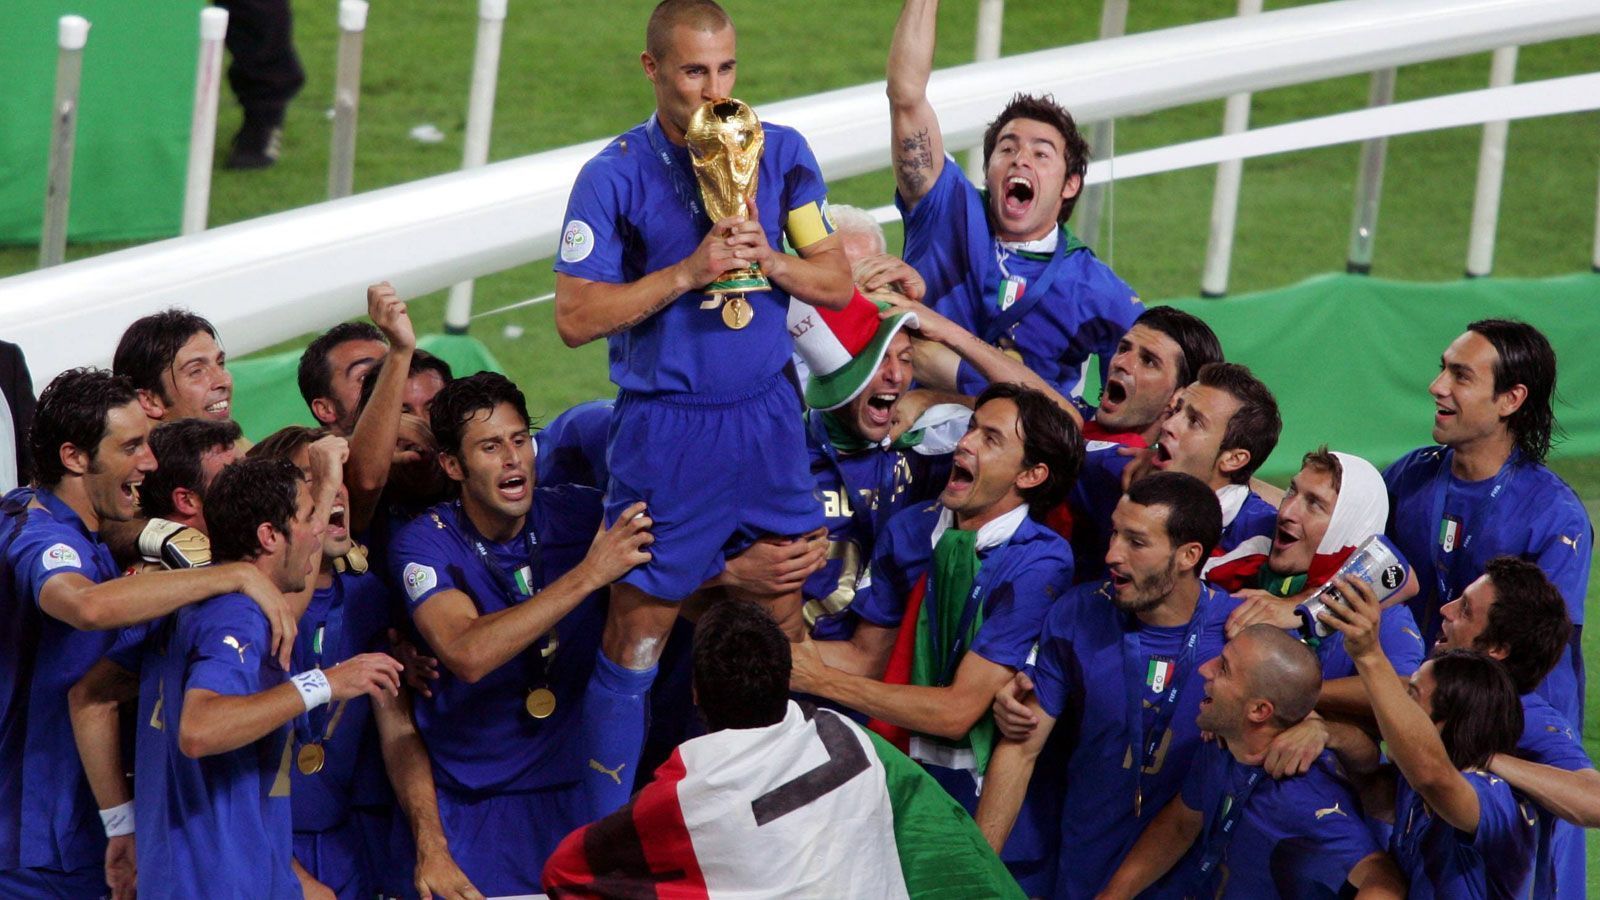 
                <strong>Italien bekam frisch polierten WM-Pokal</strong><br>
                Vor der WM 2006 - also dem dritten Trimph Italiens - wurde der damals 33-jährige WM-Pokal einer Schönheitsreparatur unterzogen. Unter anderem wurden die Erdkugel poliert und die beiden brüchigen Malachit-Ringe am unteren Ende des Sockels ersetzt. Auf letzteren befinden sich die Aufschrift "FIFA World Cup" und 17 Flächen, auf denen ursprünglich die Weltmeister verewigt werden sollten.
              